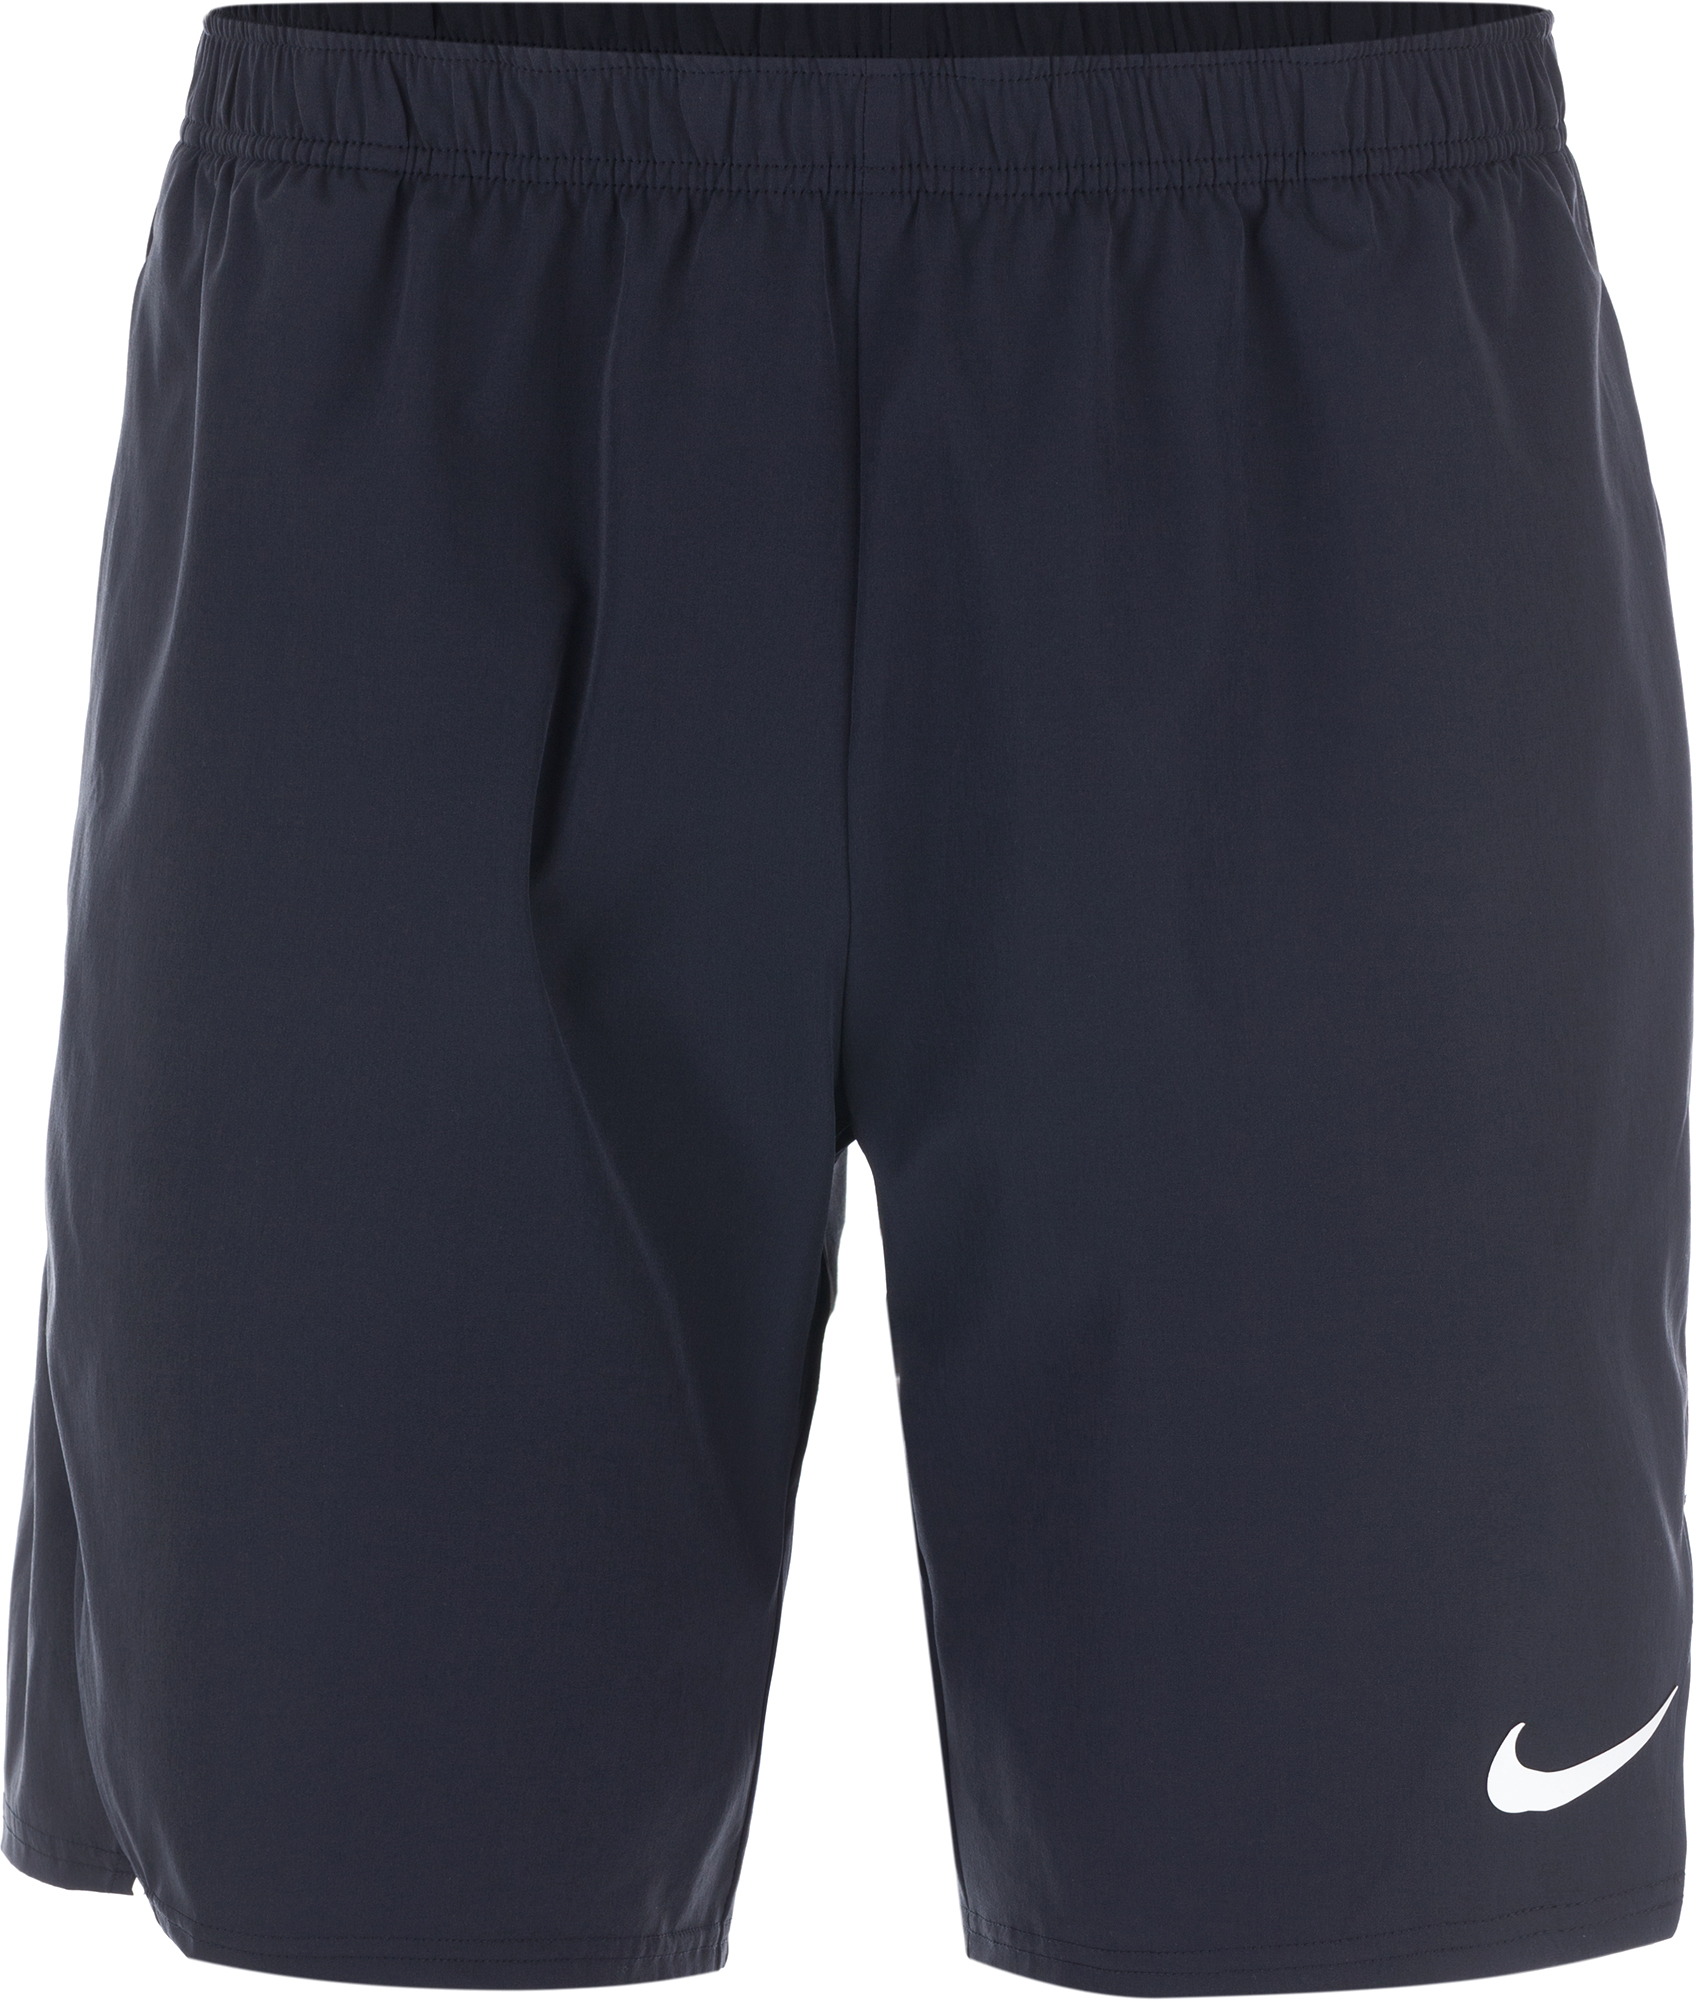 Шорты мужские Nike Court Flex Ace, размер 52-54